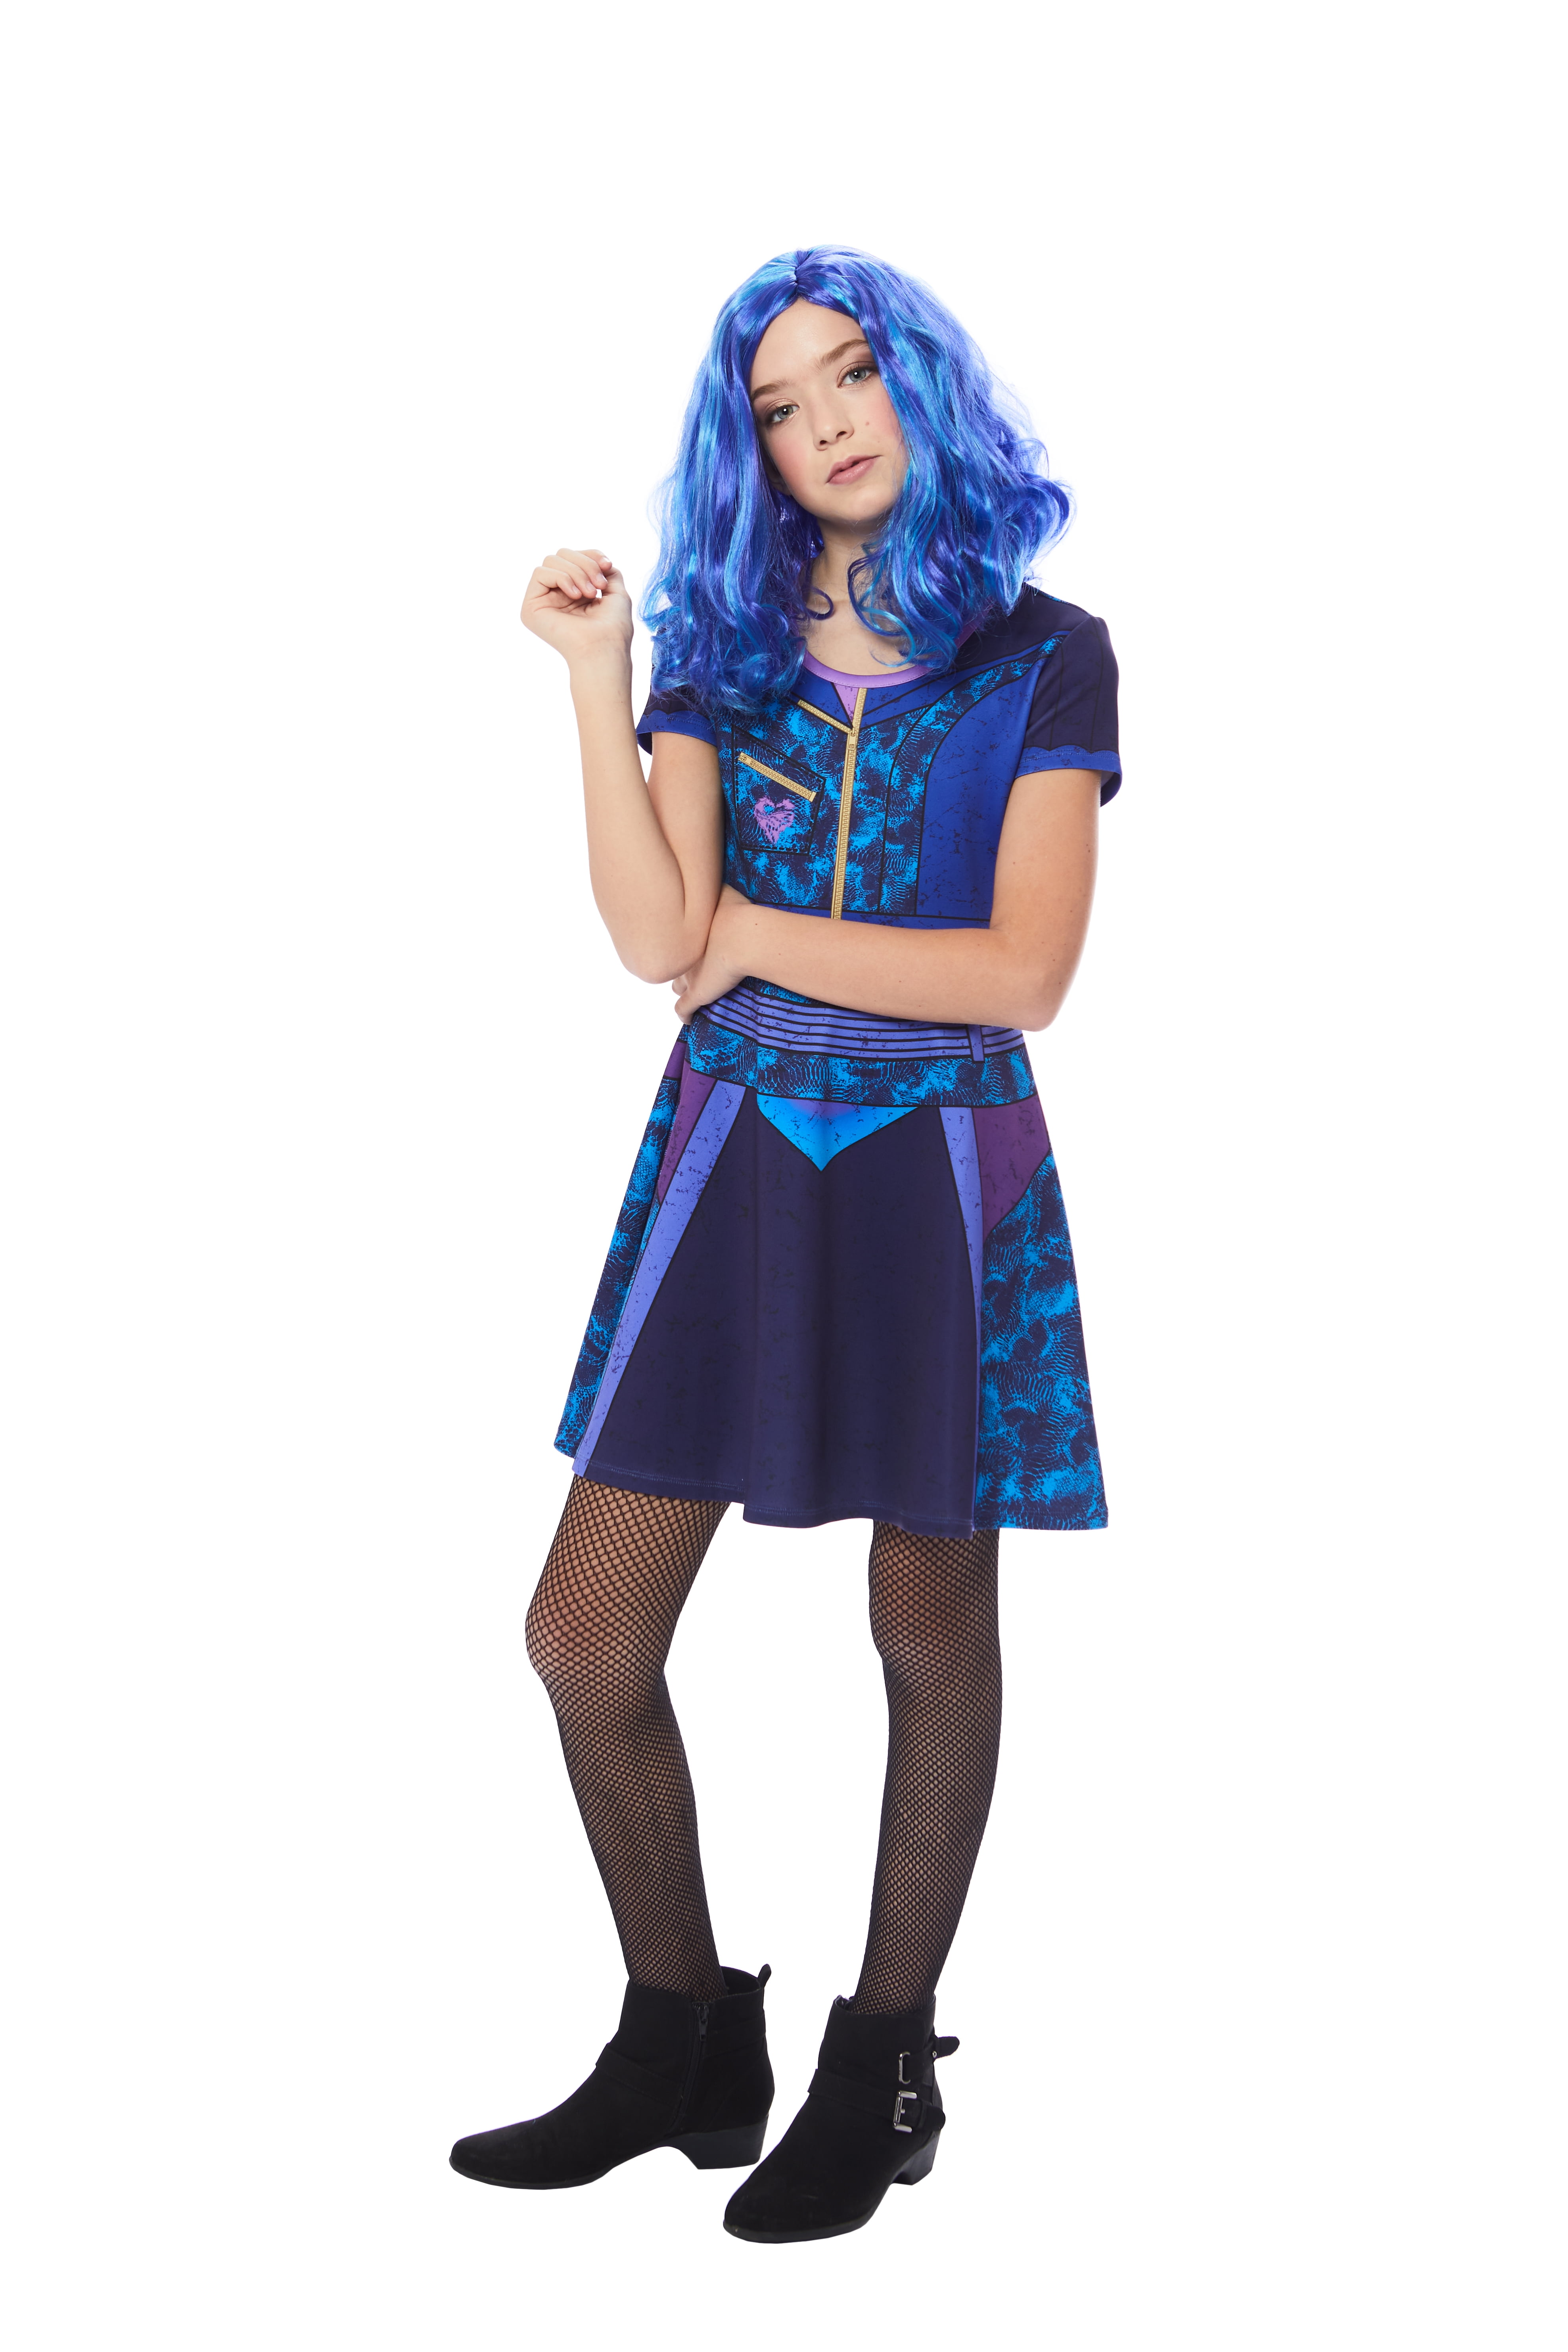 Mal Deluxe Disney Descendants 3 Movie Fancy Dress Up Halloween Child Costume 